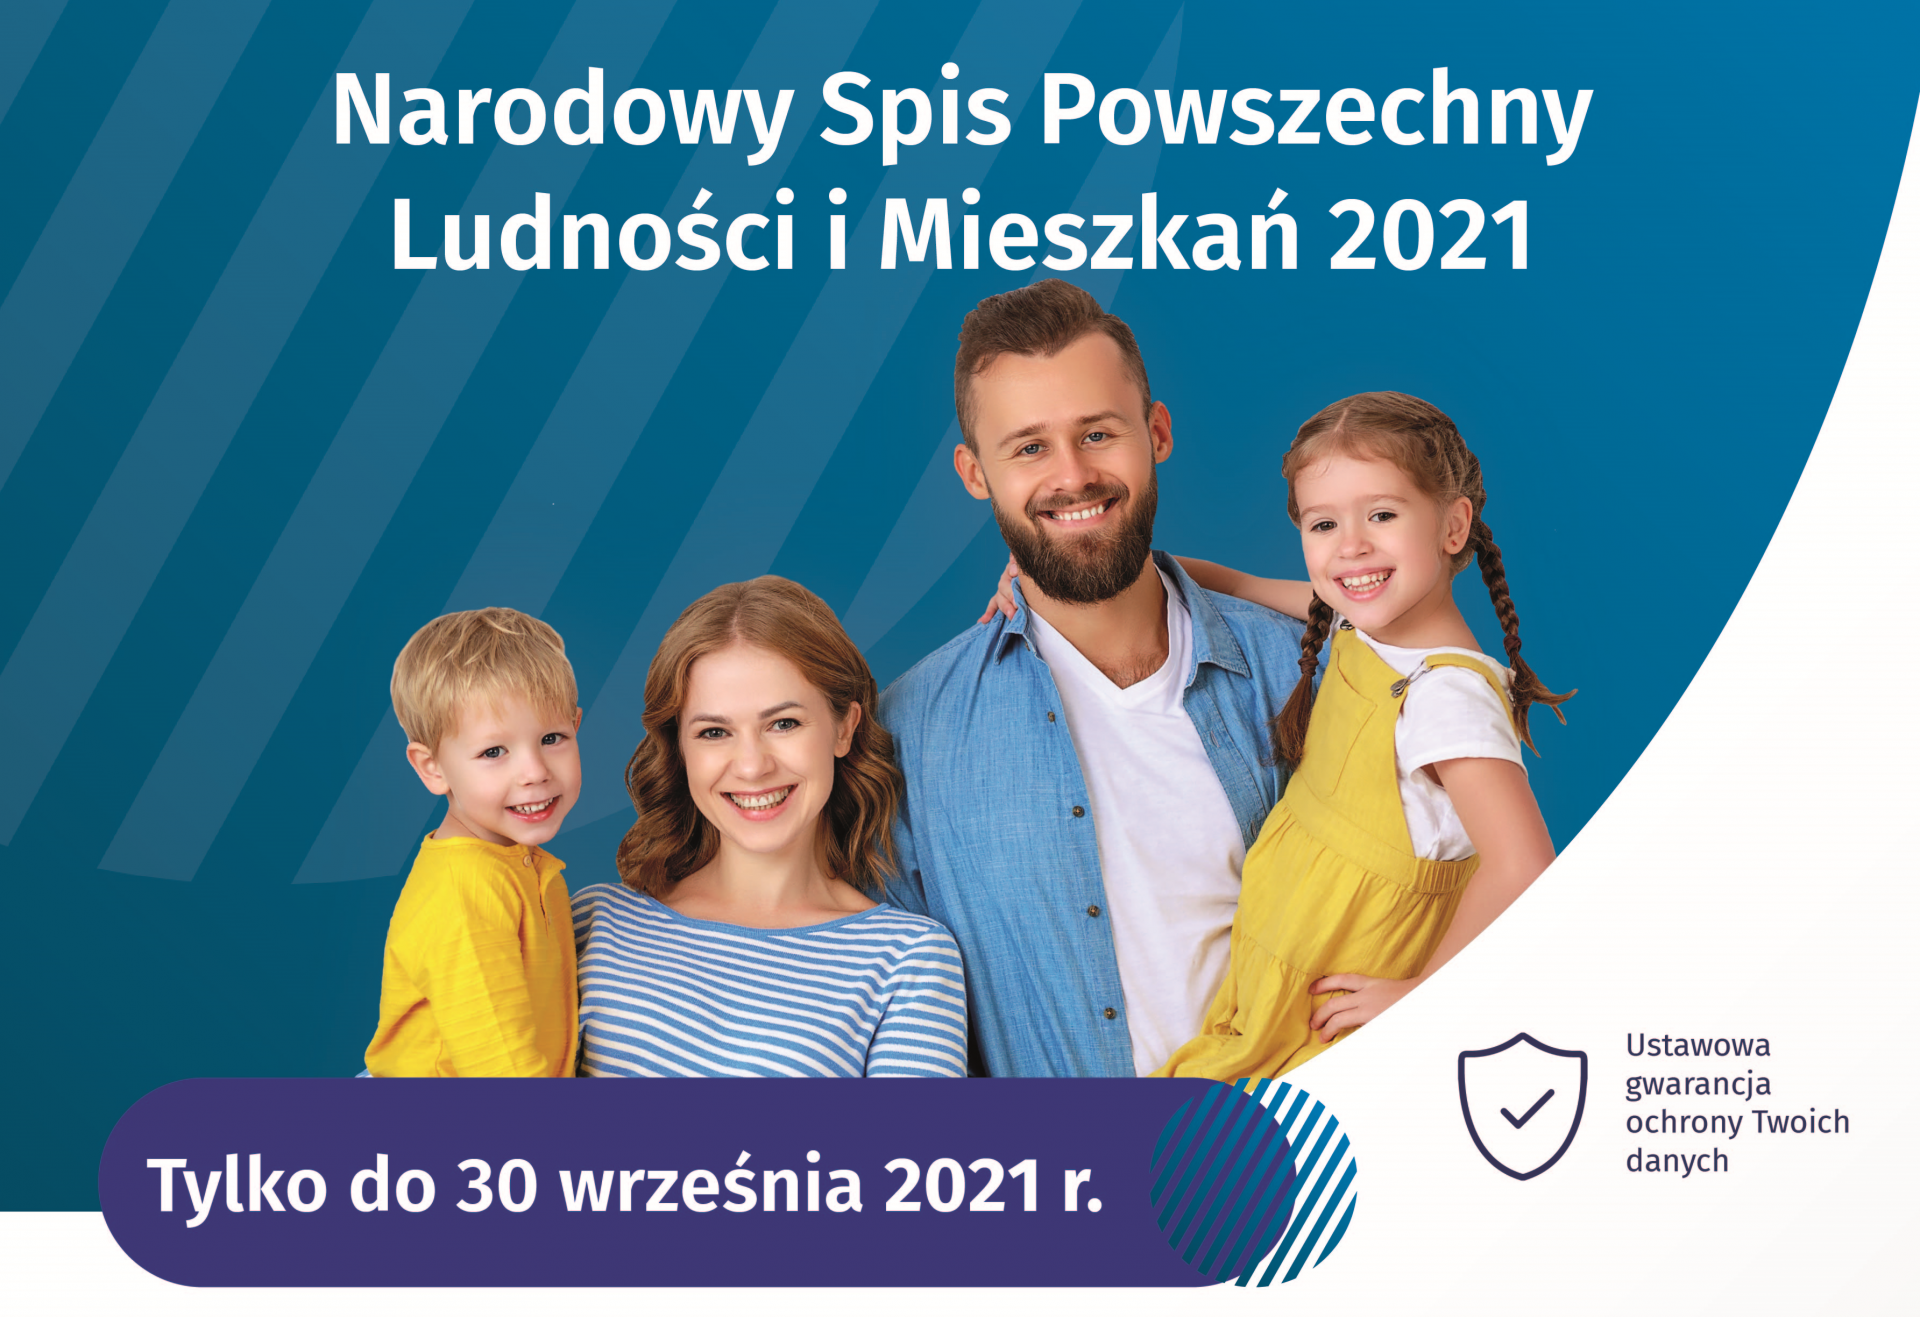 plakat reklamujący Narodowy Spis Powszechny 2021